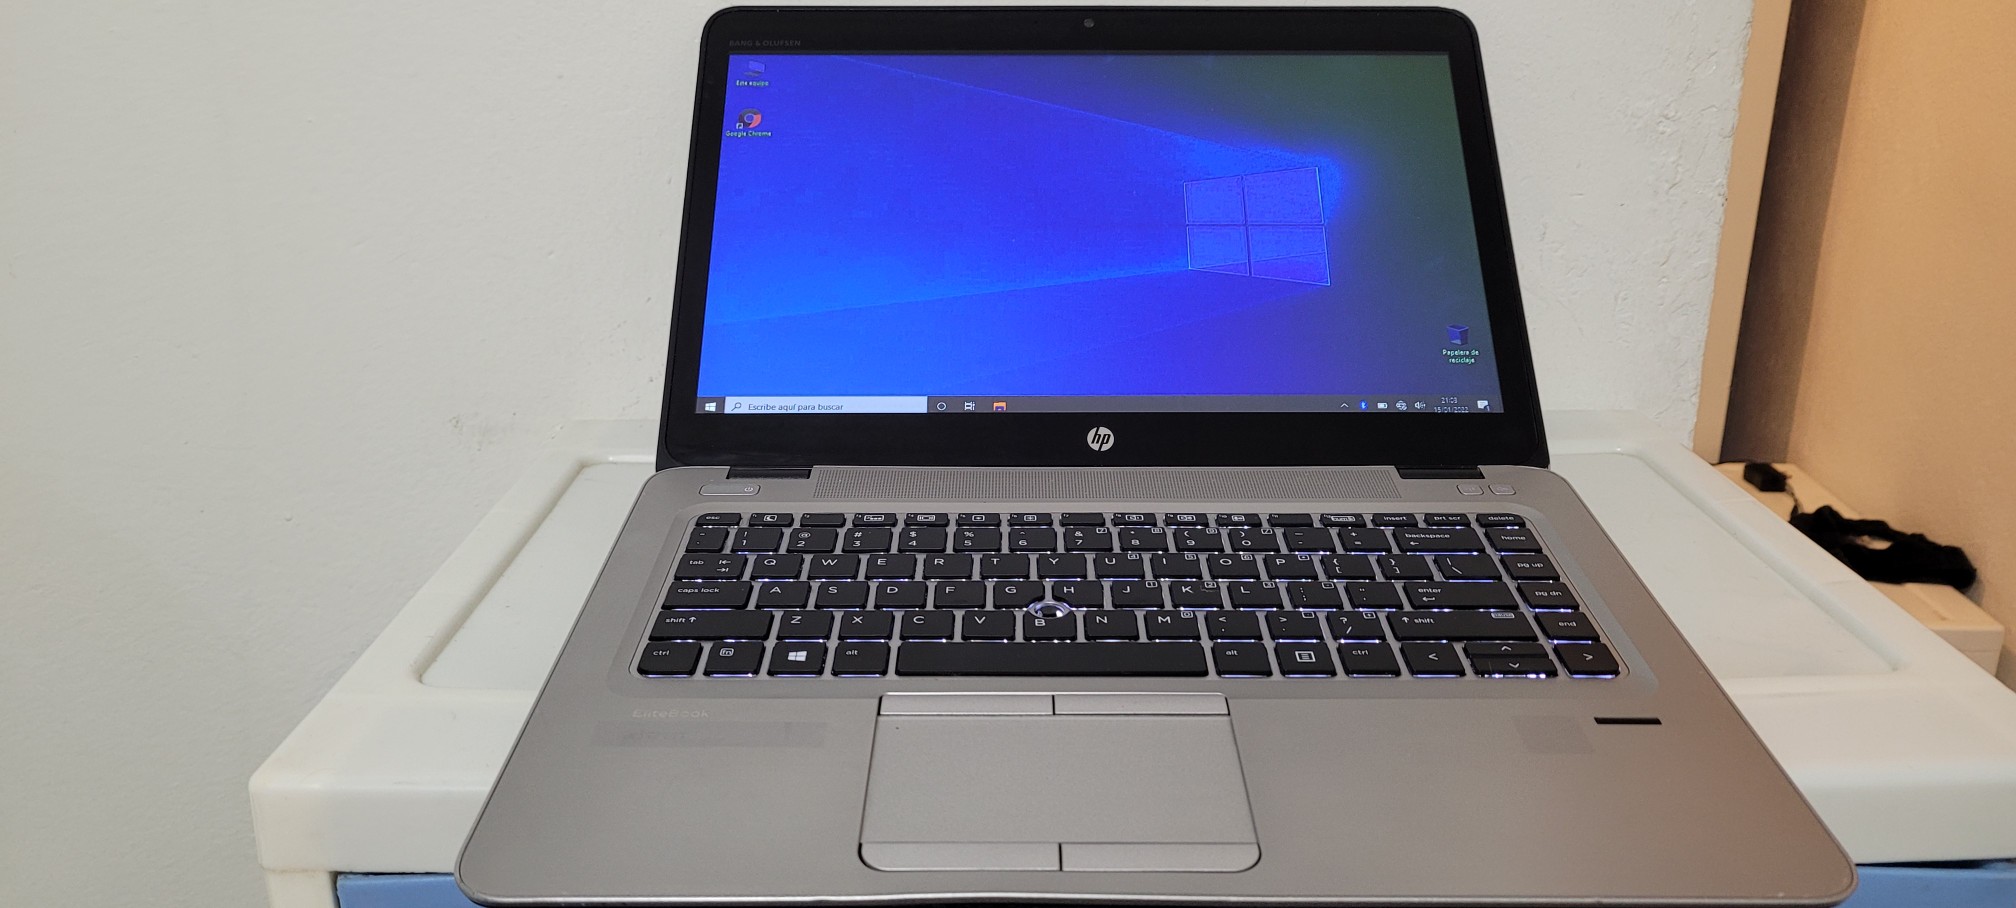 computadoras y laptops - Laptop hp Touch 14 Pulg Core i5 7ma Gen Ram 8gb ddr4 Dos Disco 128gb Y 320gb 0